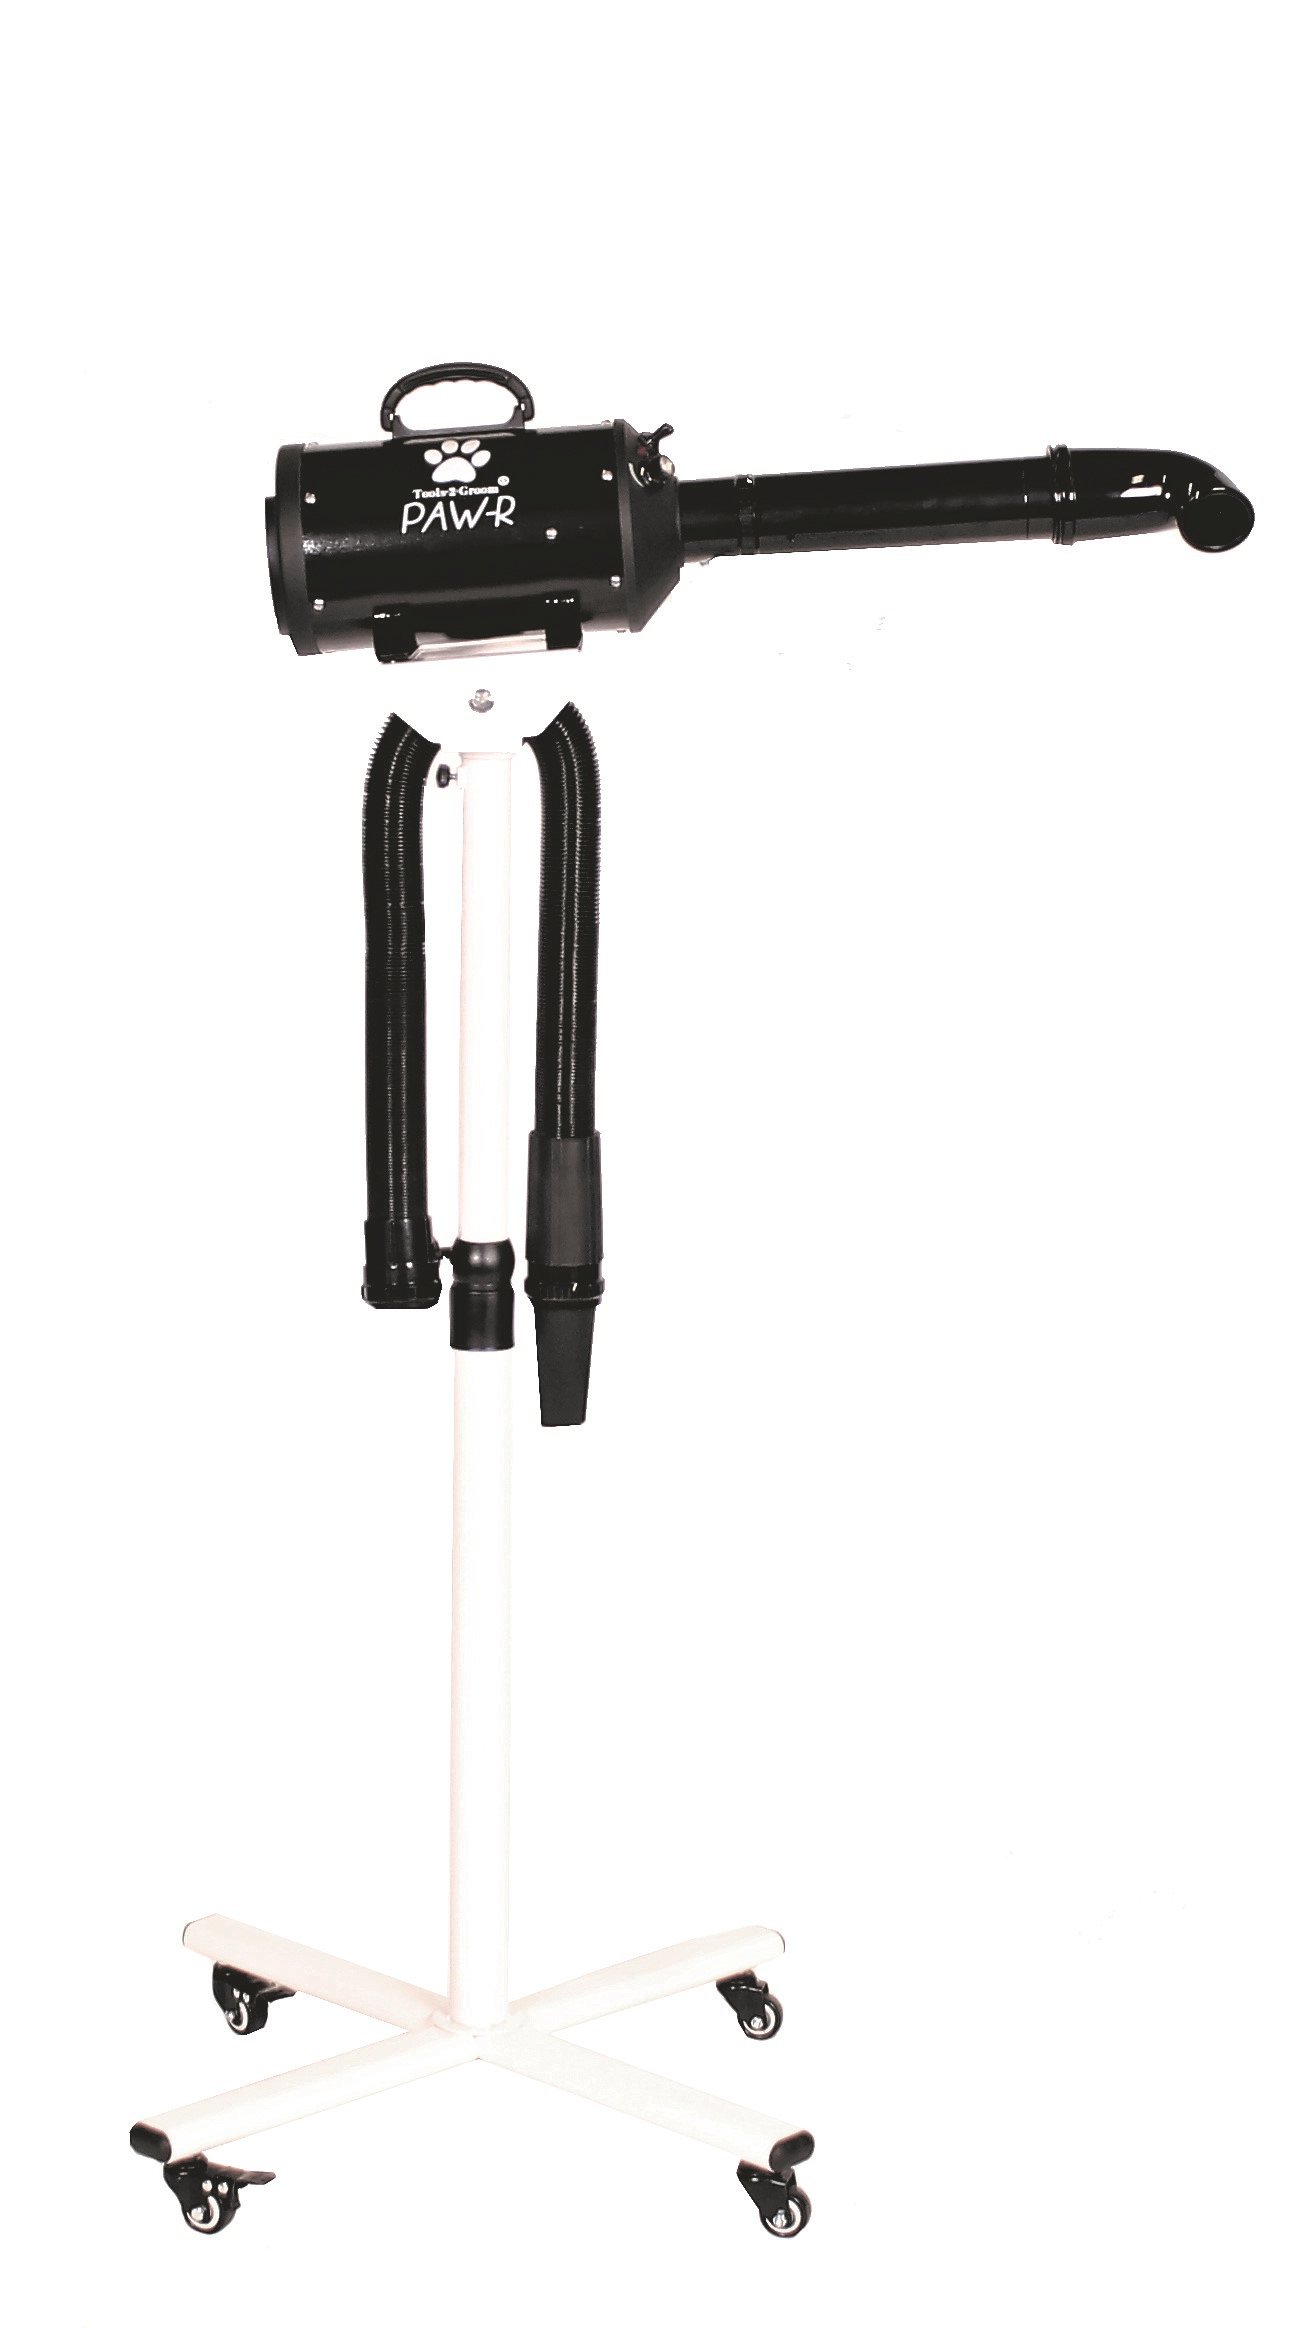 Tools-2-Groom Waterblazer Paw-R zwart op statief 